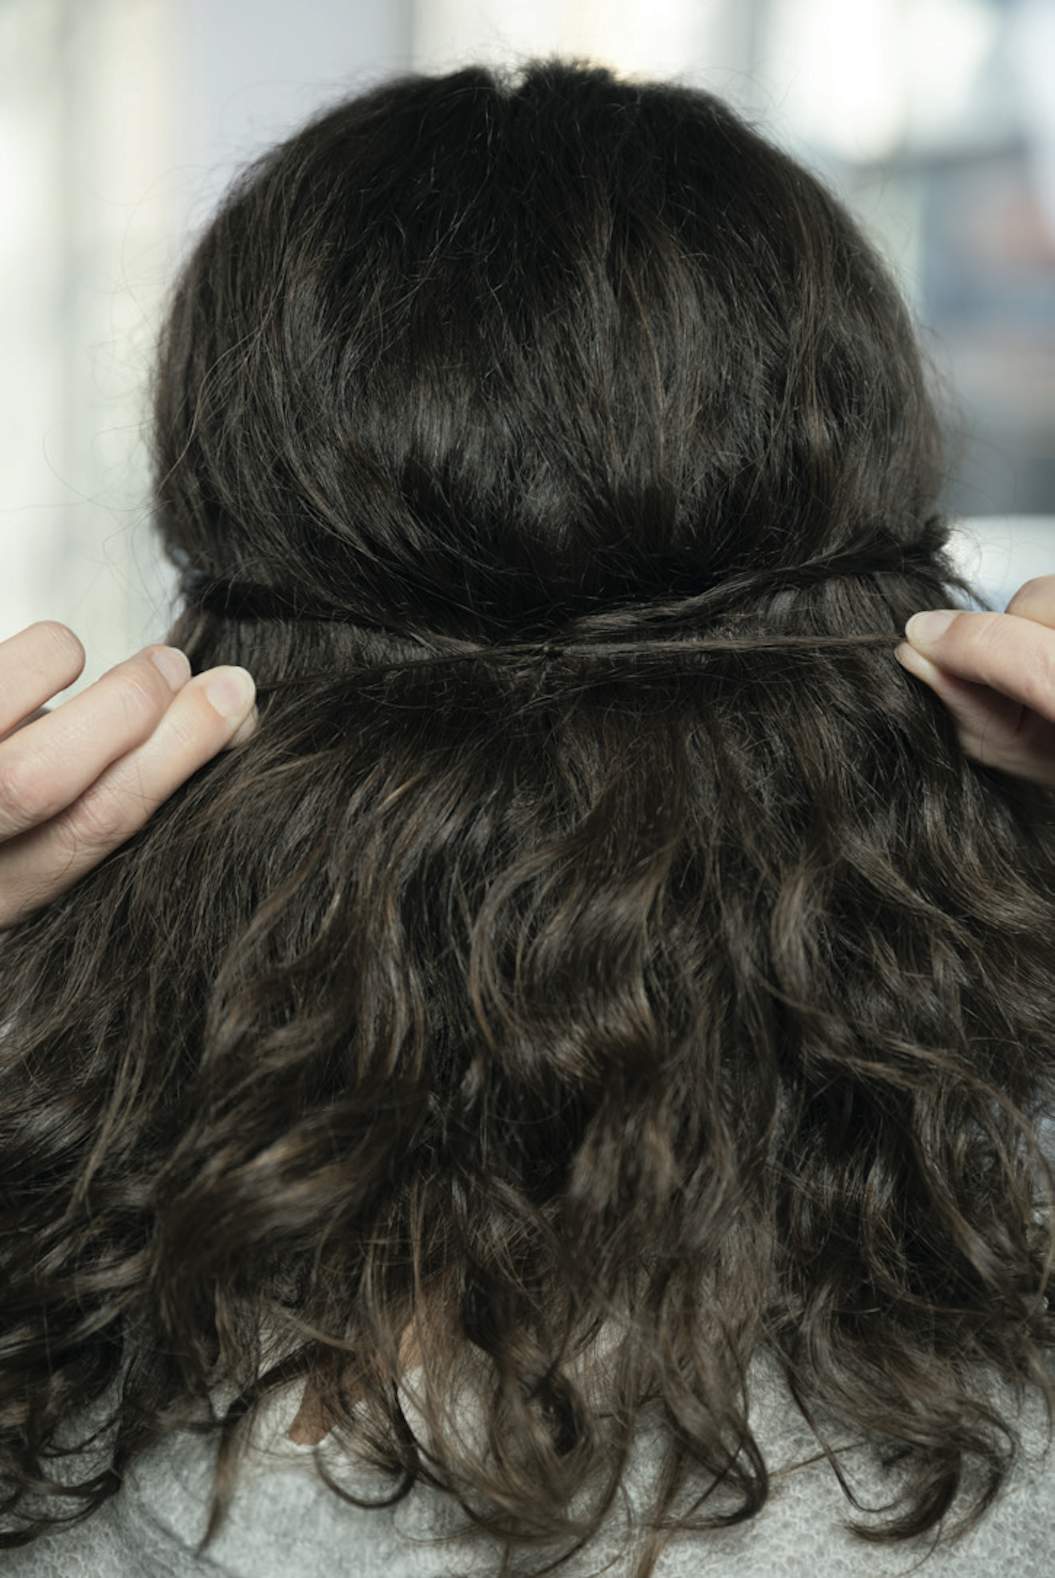 Håret knold i Opsatte frisurer